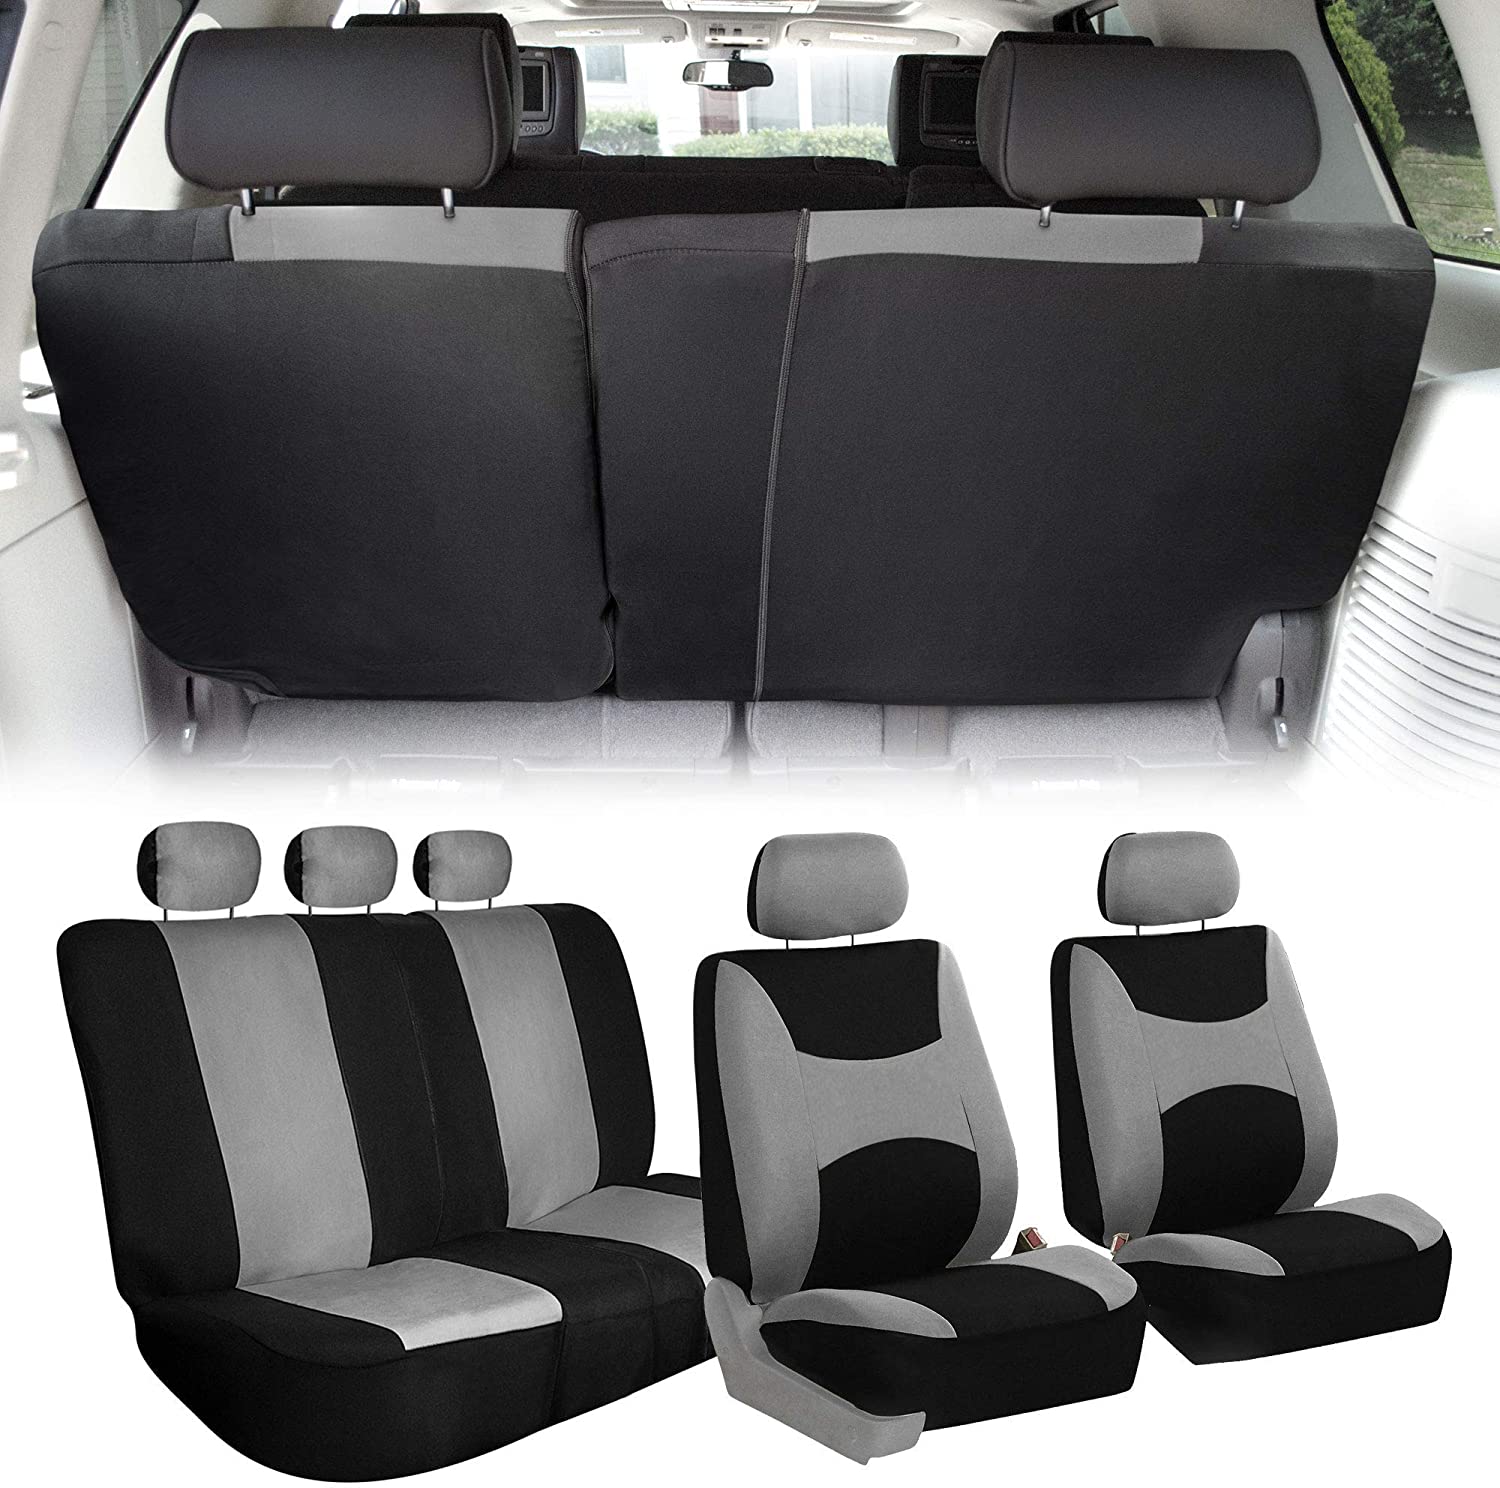 Light & Breezy Full Coverage Car Seat Covers - Full Set Gray